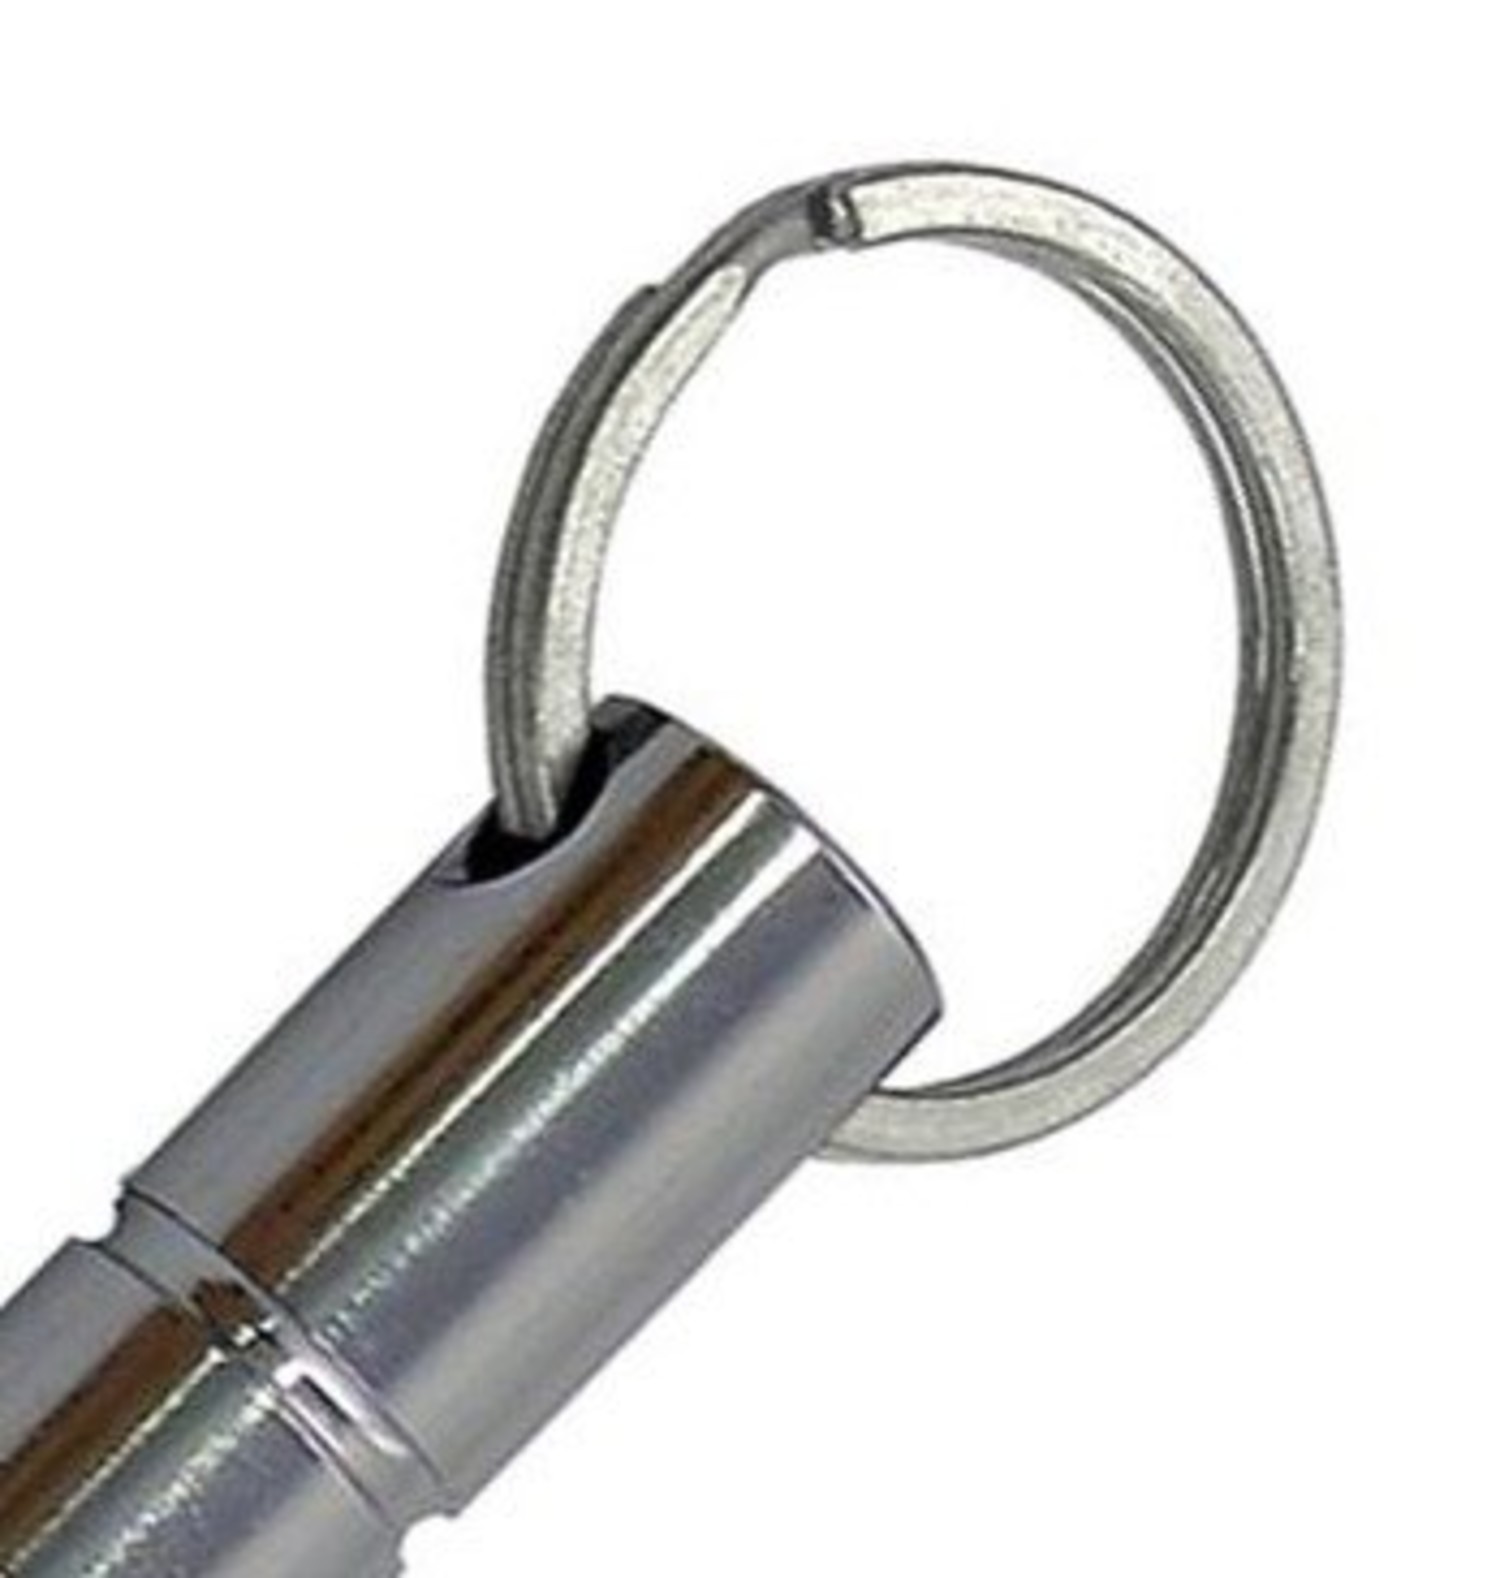 Free STL file Kubotan Key Ring For Self-Defense 🔑・Design to